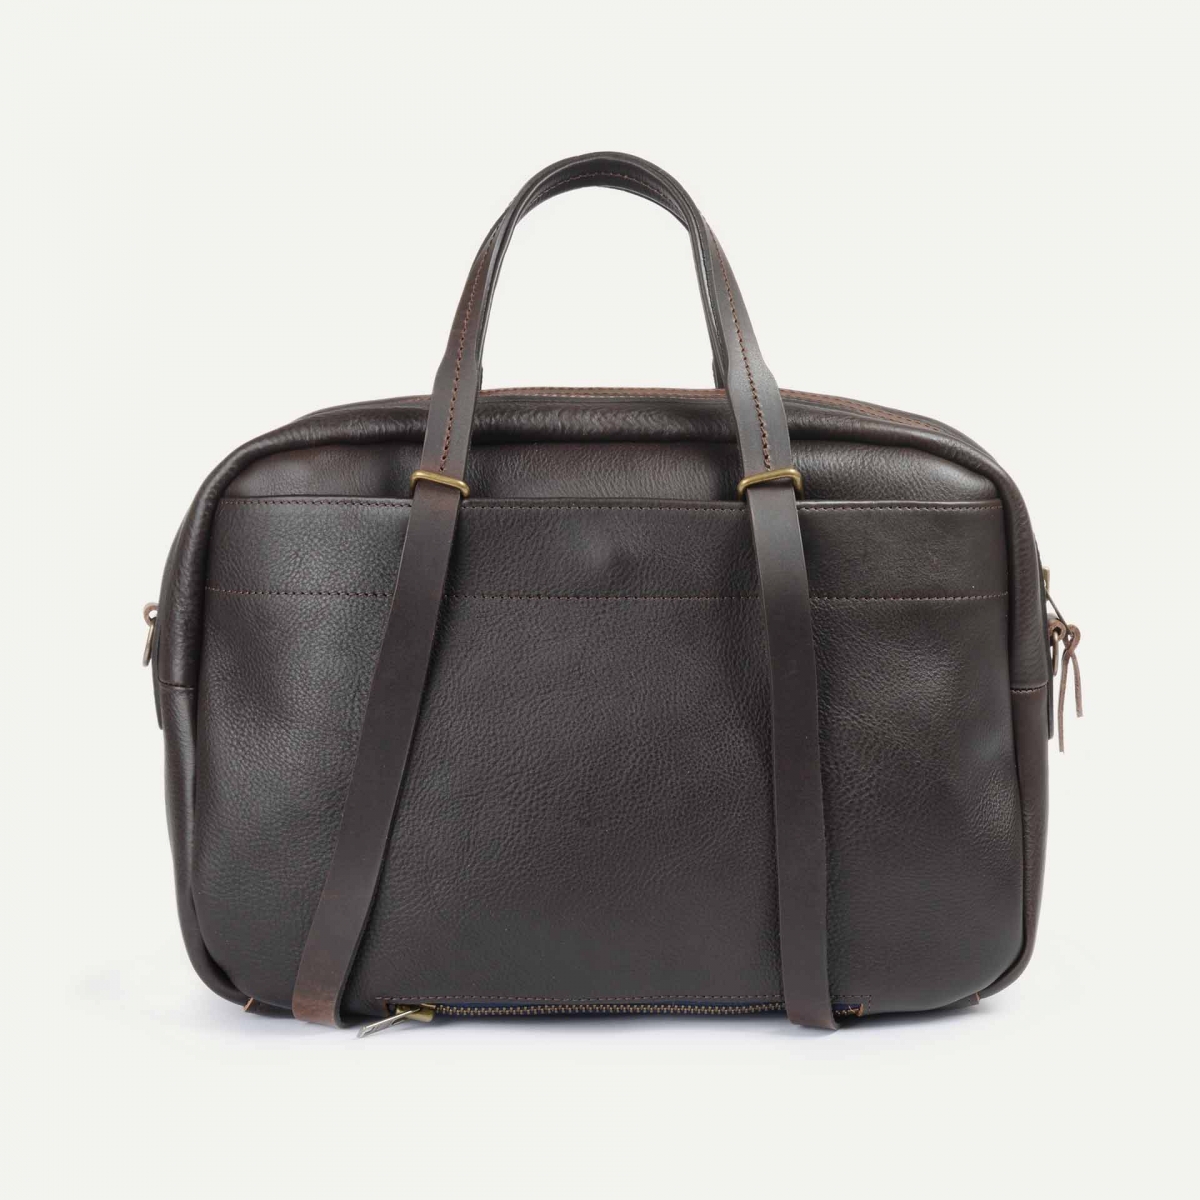 Report Business bag - Brown - Men's Folder bag - Leather Laptop bag for Men  - Made in France